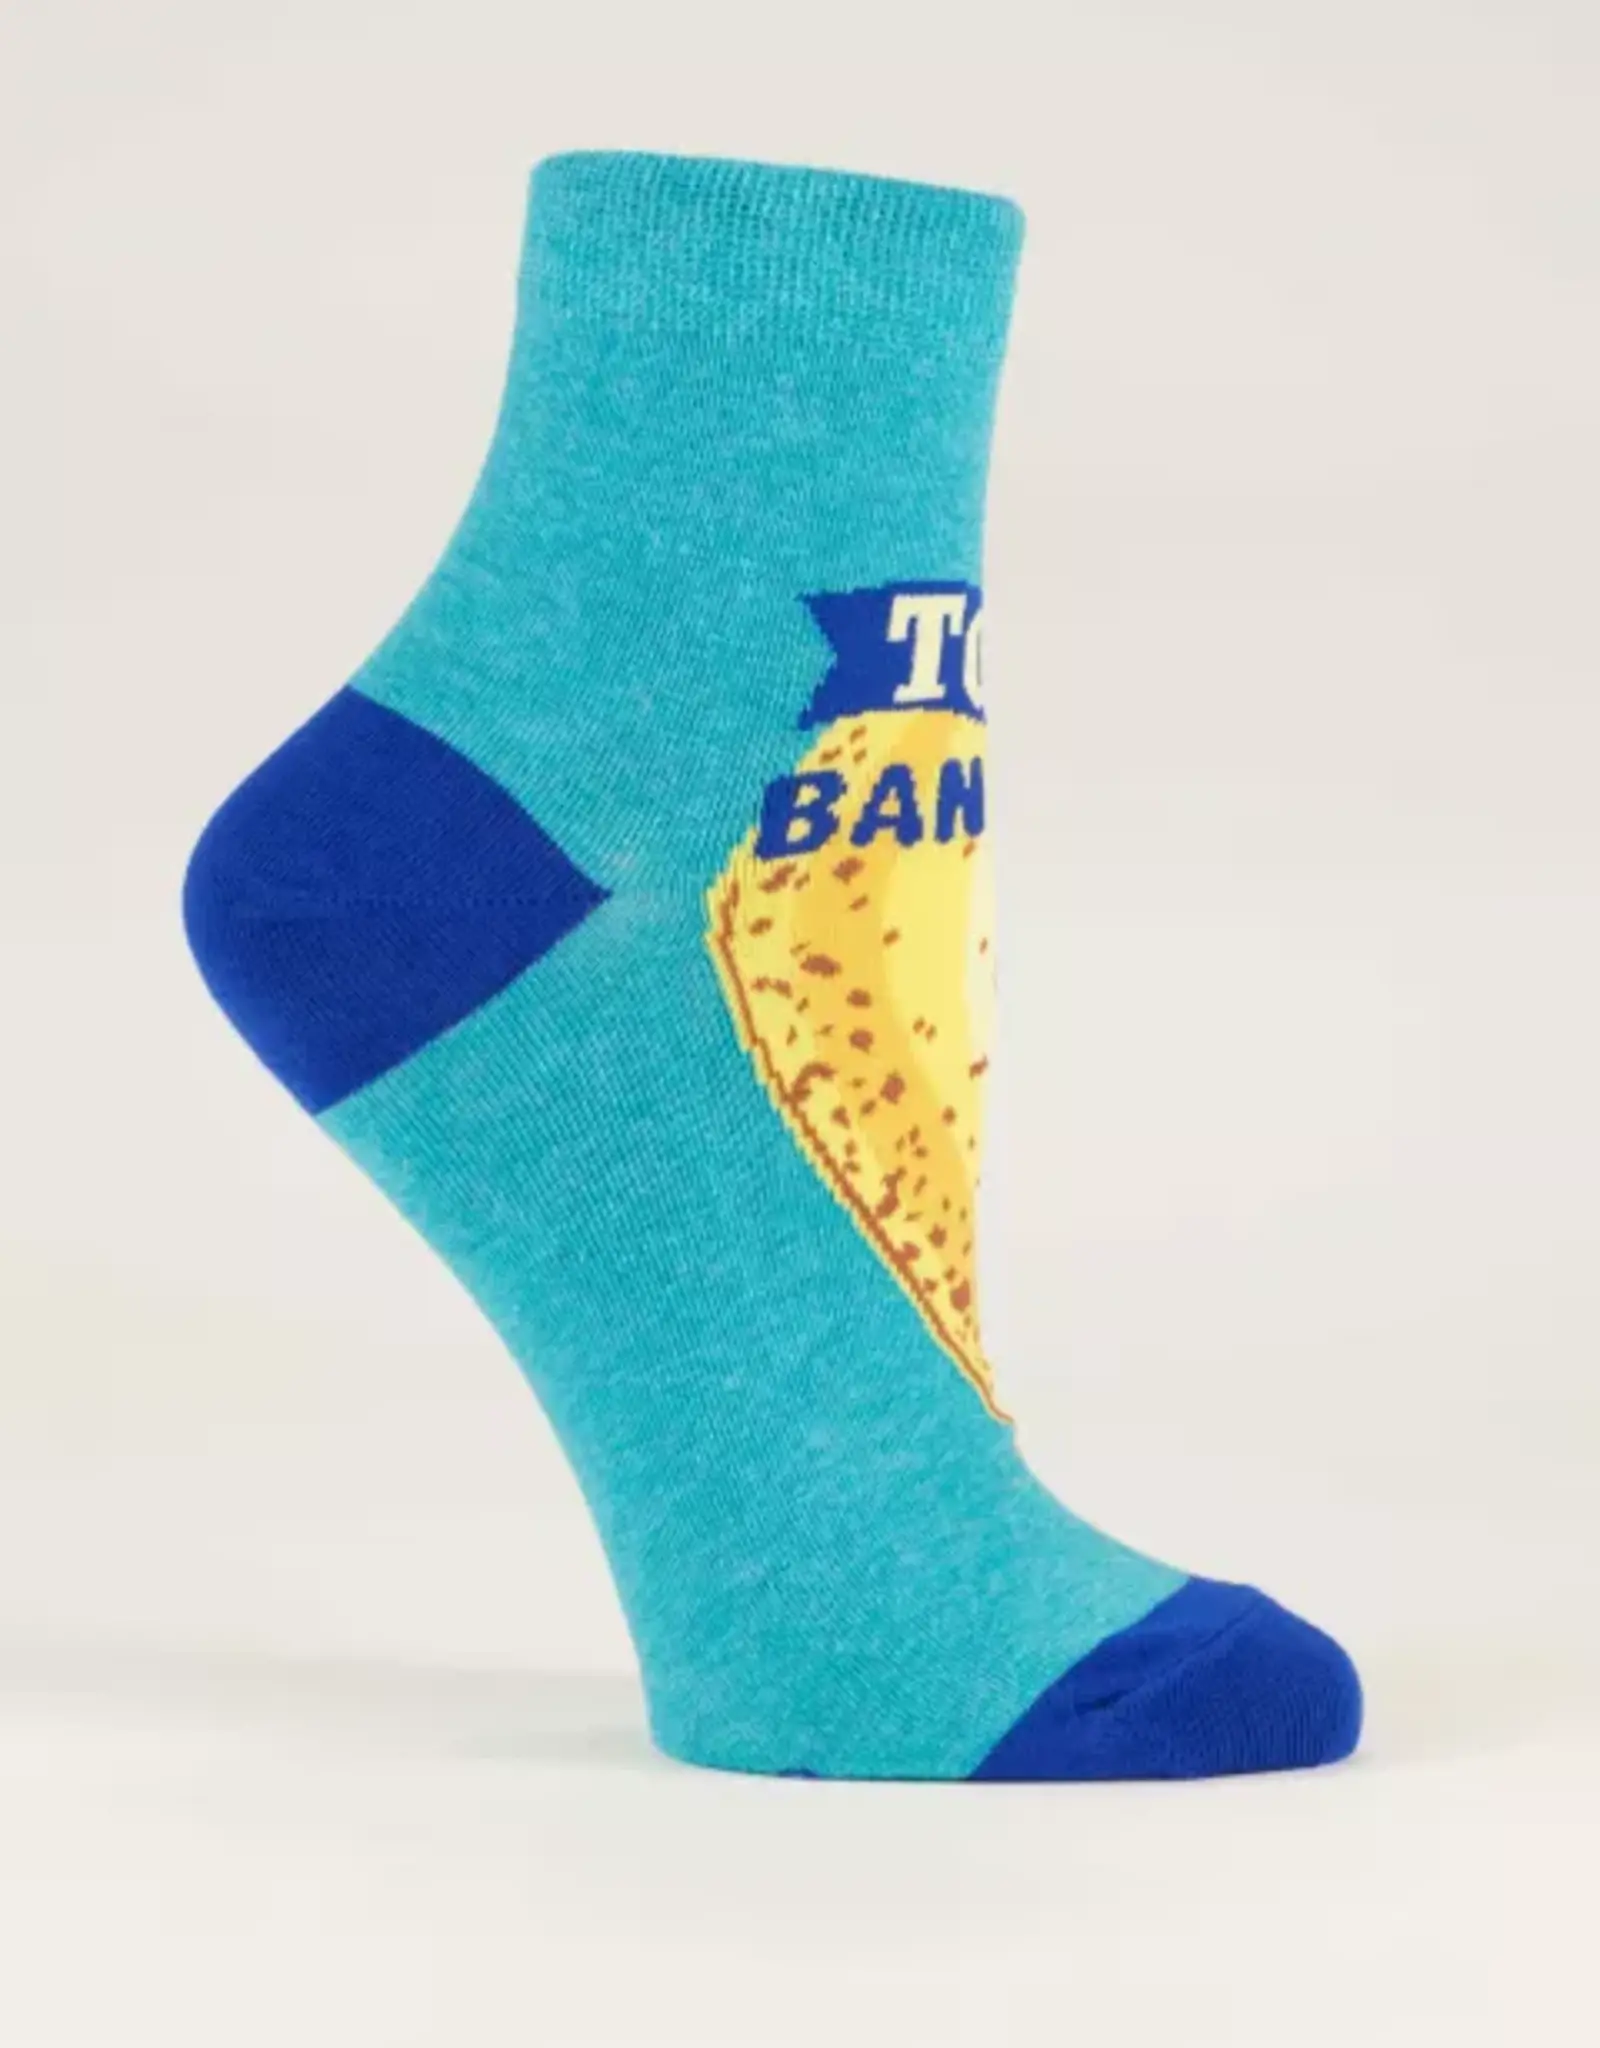 Blue Q Socks - Women's Ankle: Top Banana